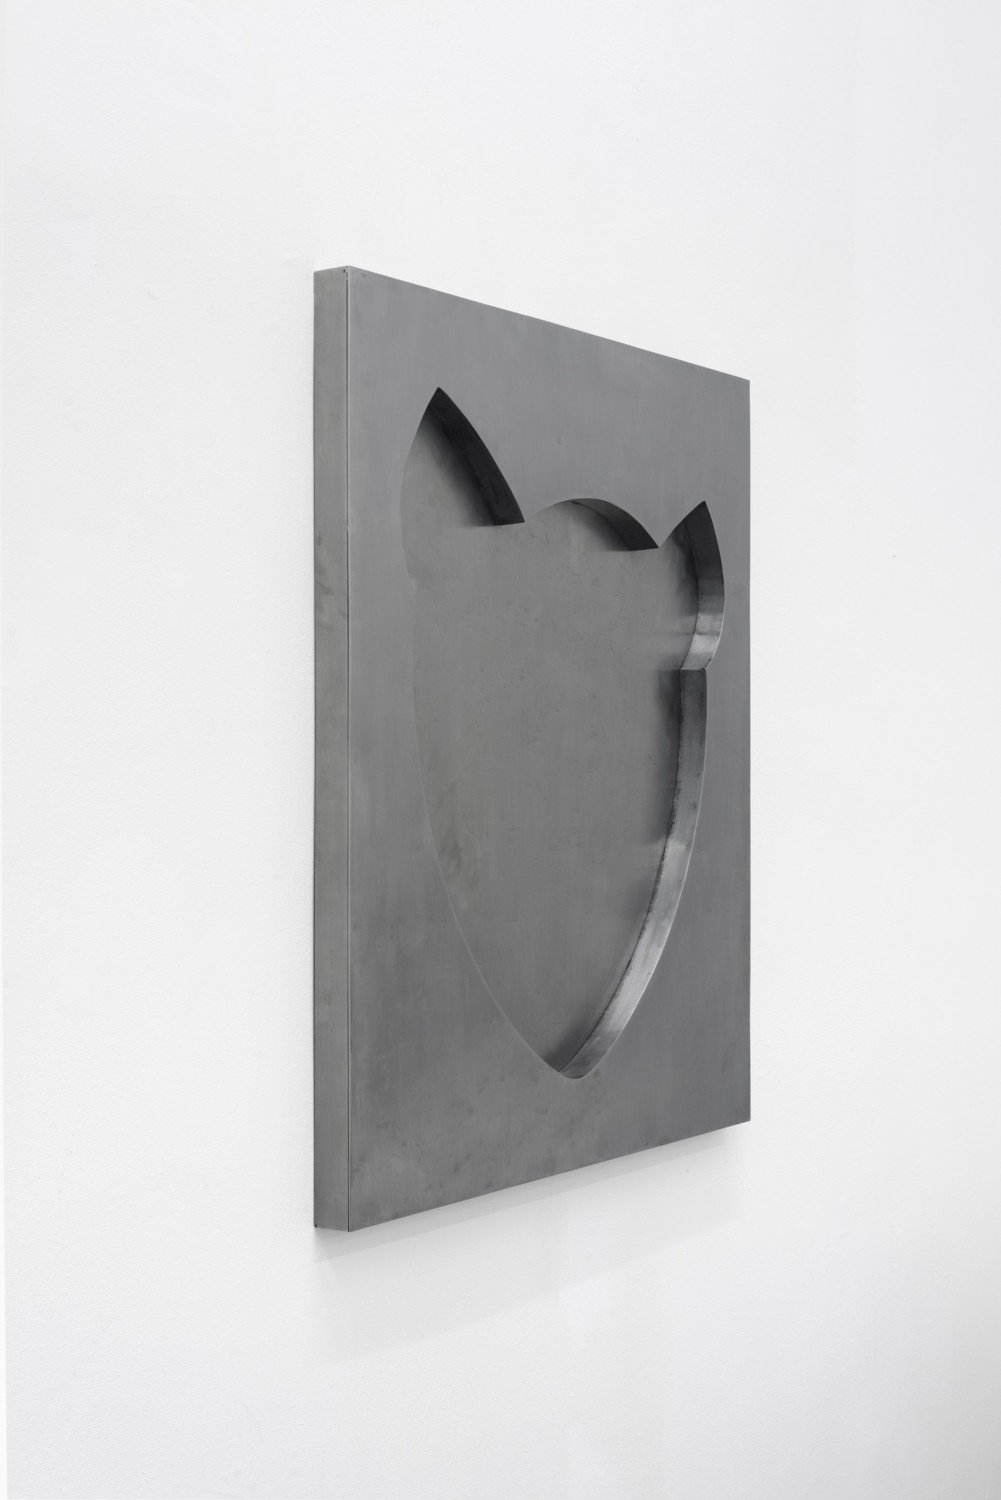 Franz AmannNo.0, 2015Welded steel110 x 93.5 x 5.5 cm